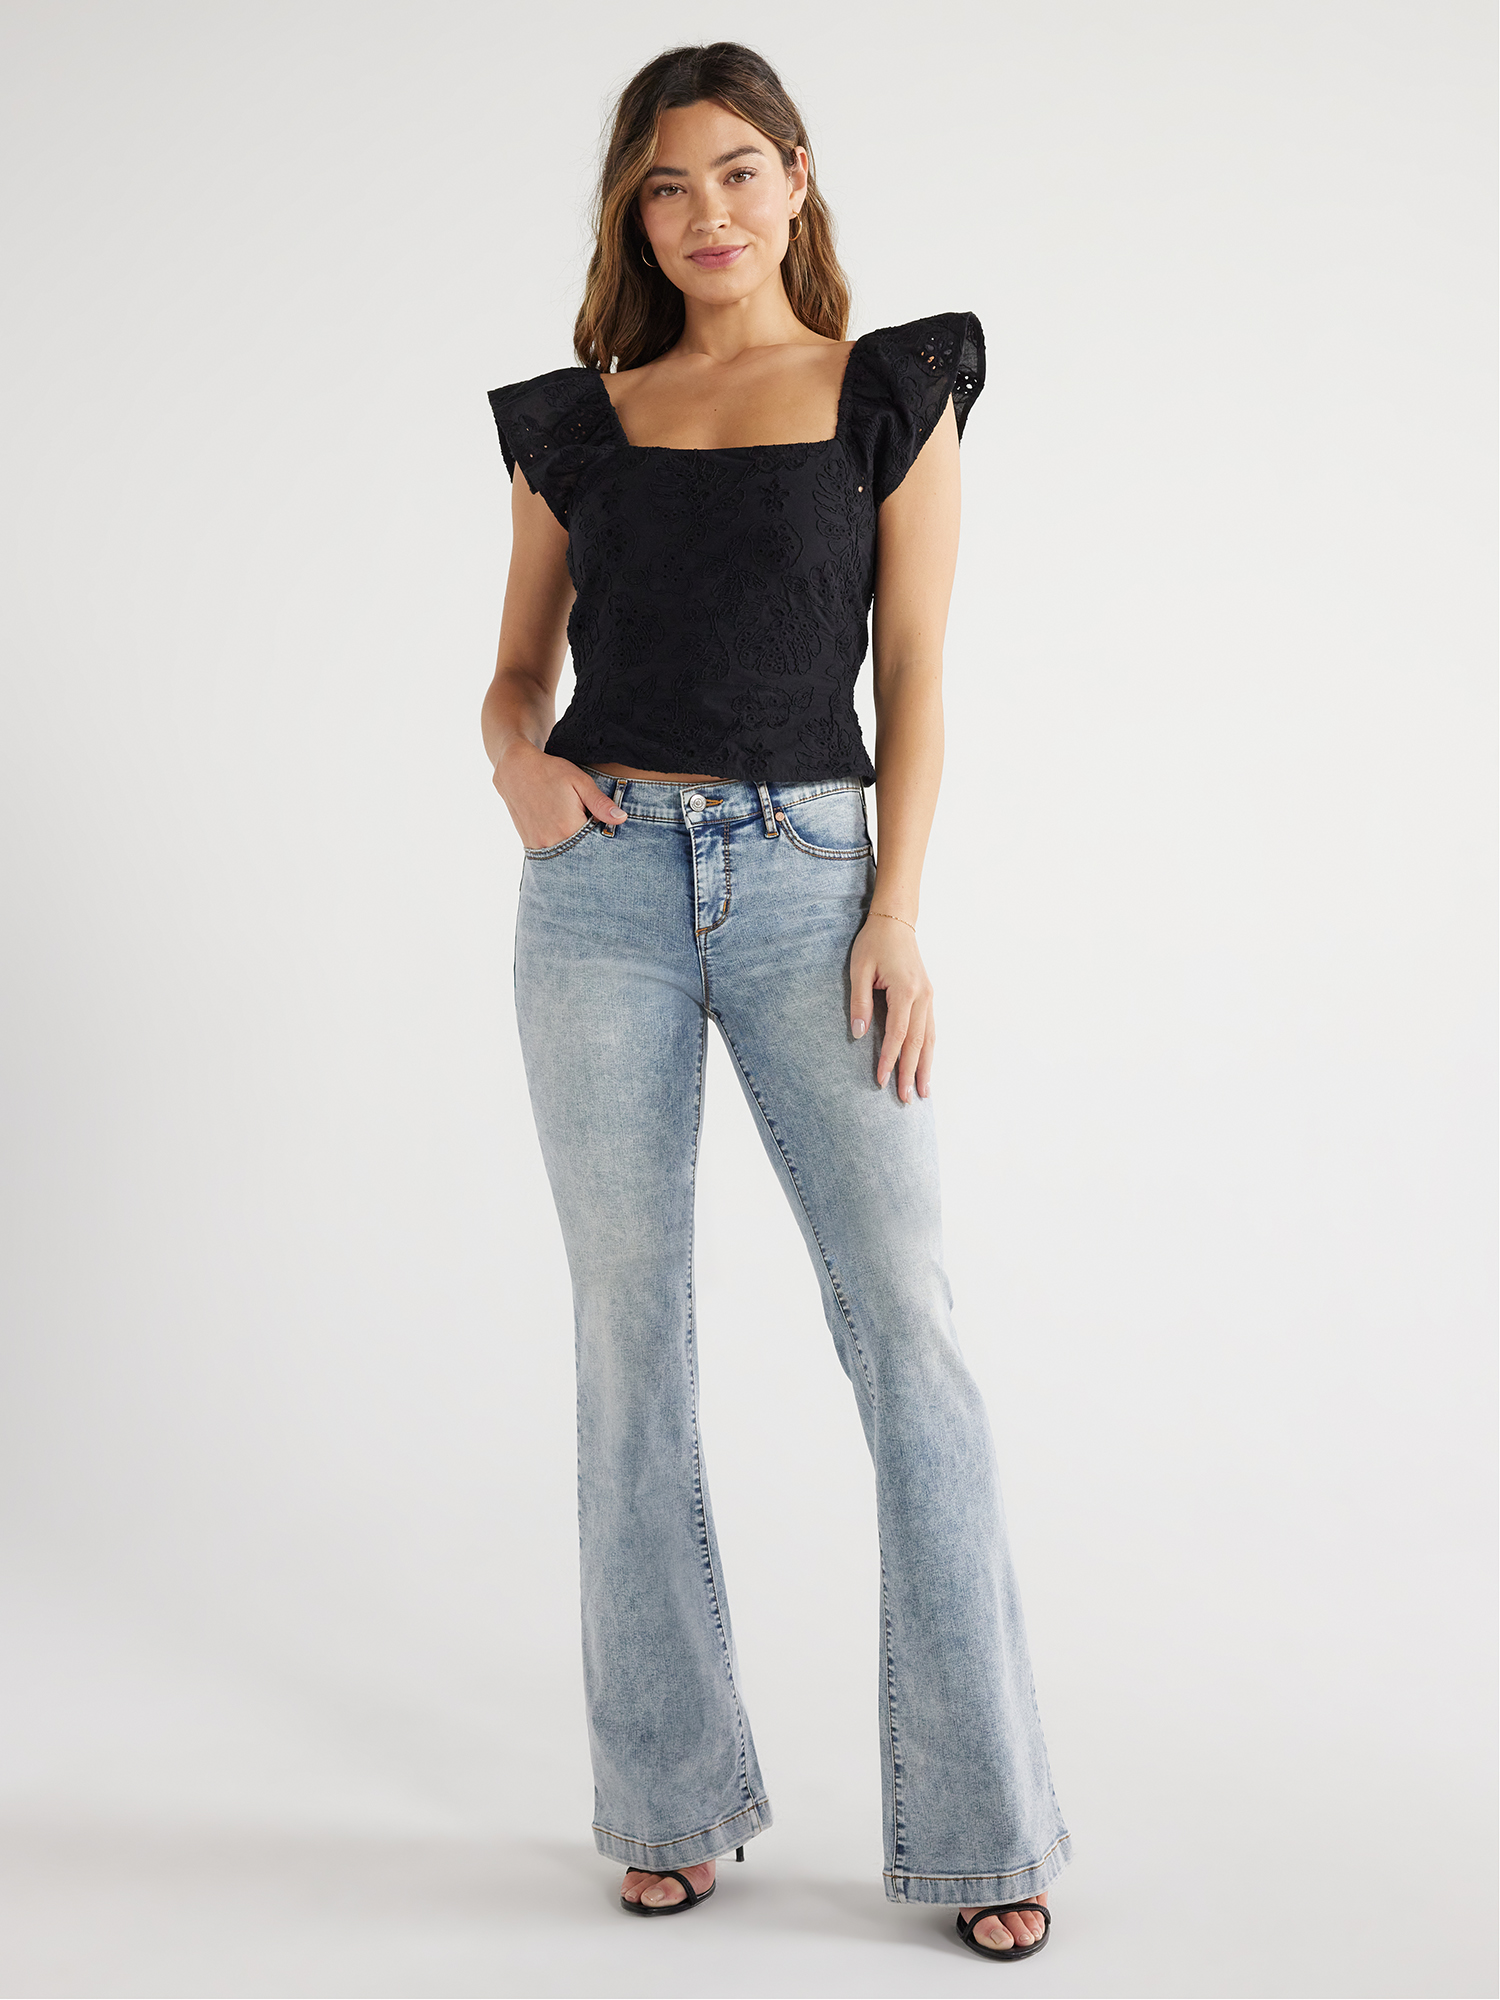 Sofia Jeans Women's Ruffle Sleeve Top, Sizes XS-XXXL - Walmart.com